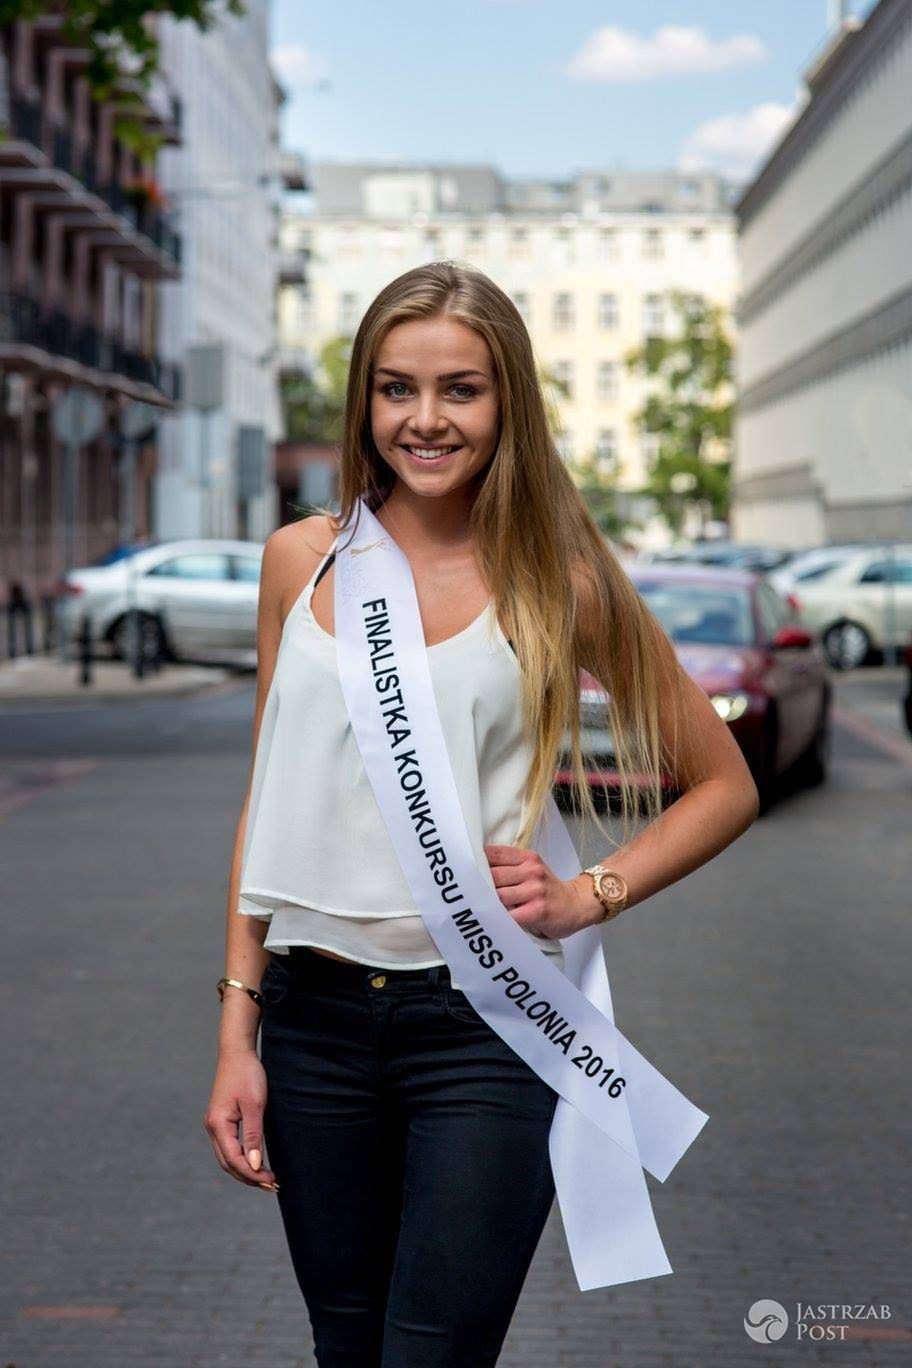 Uczestniczka konkursu Miss Polonia 2016: KATARZYNA SZKLARCZYK, Bukowno, woj. małopolskie 20 lat, wzrost 179 cm (fot. Facebook.com/OfficialMissPolonia)